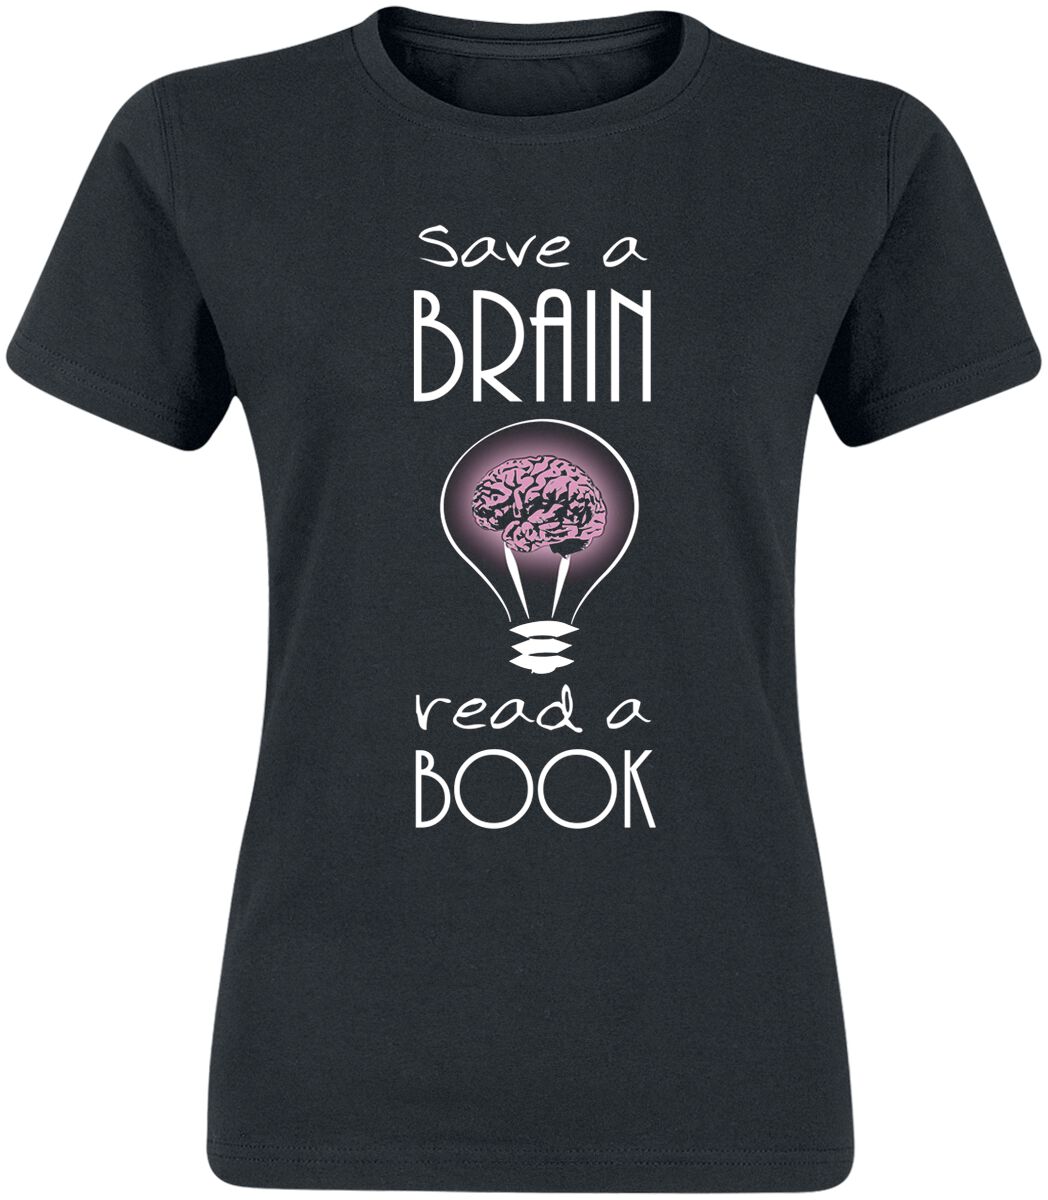 T-Shirt Manches courtes Fun de Slogans - Save A Brain - Read A Book - M à 3XL - pour Femme - noir